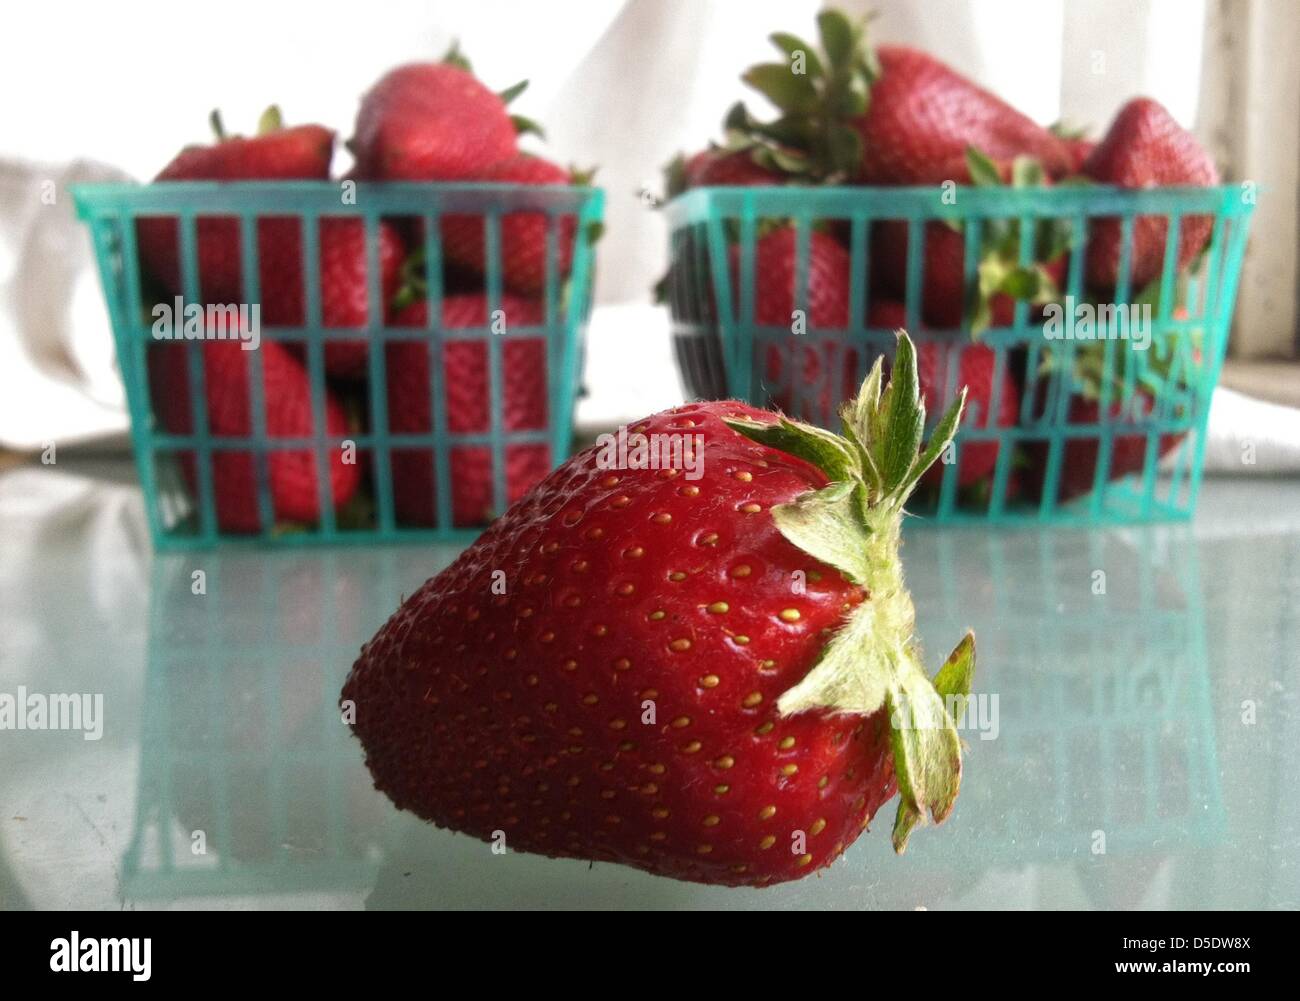 29 mars 2013 - Los Angeles, Californie, États-Unis - marché des producteurs de fraises fraîches à partir d'une ferme de fruits à Oxnard, Californie. (Crédit Image : © Jonathan Alcorn/ZUMAPRESS.com) Banque D'Images